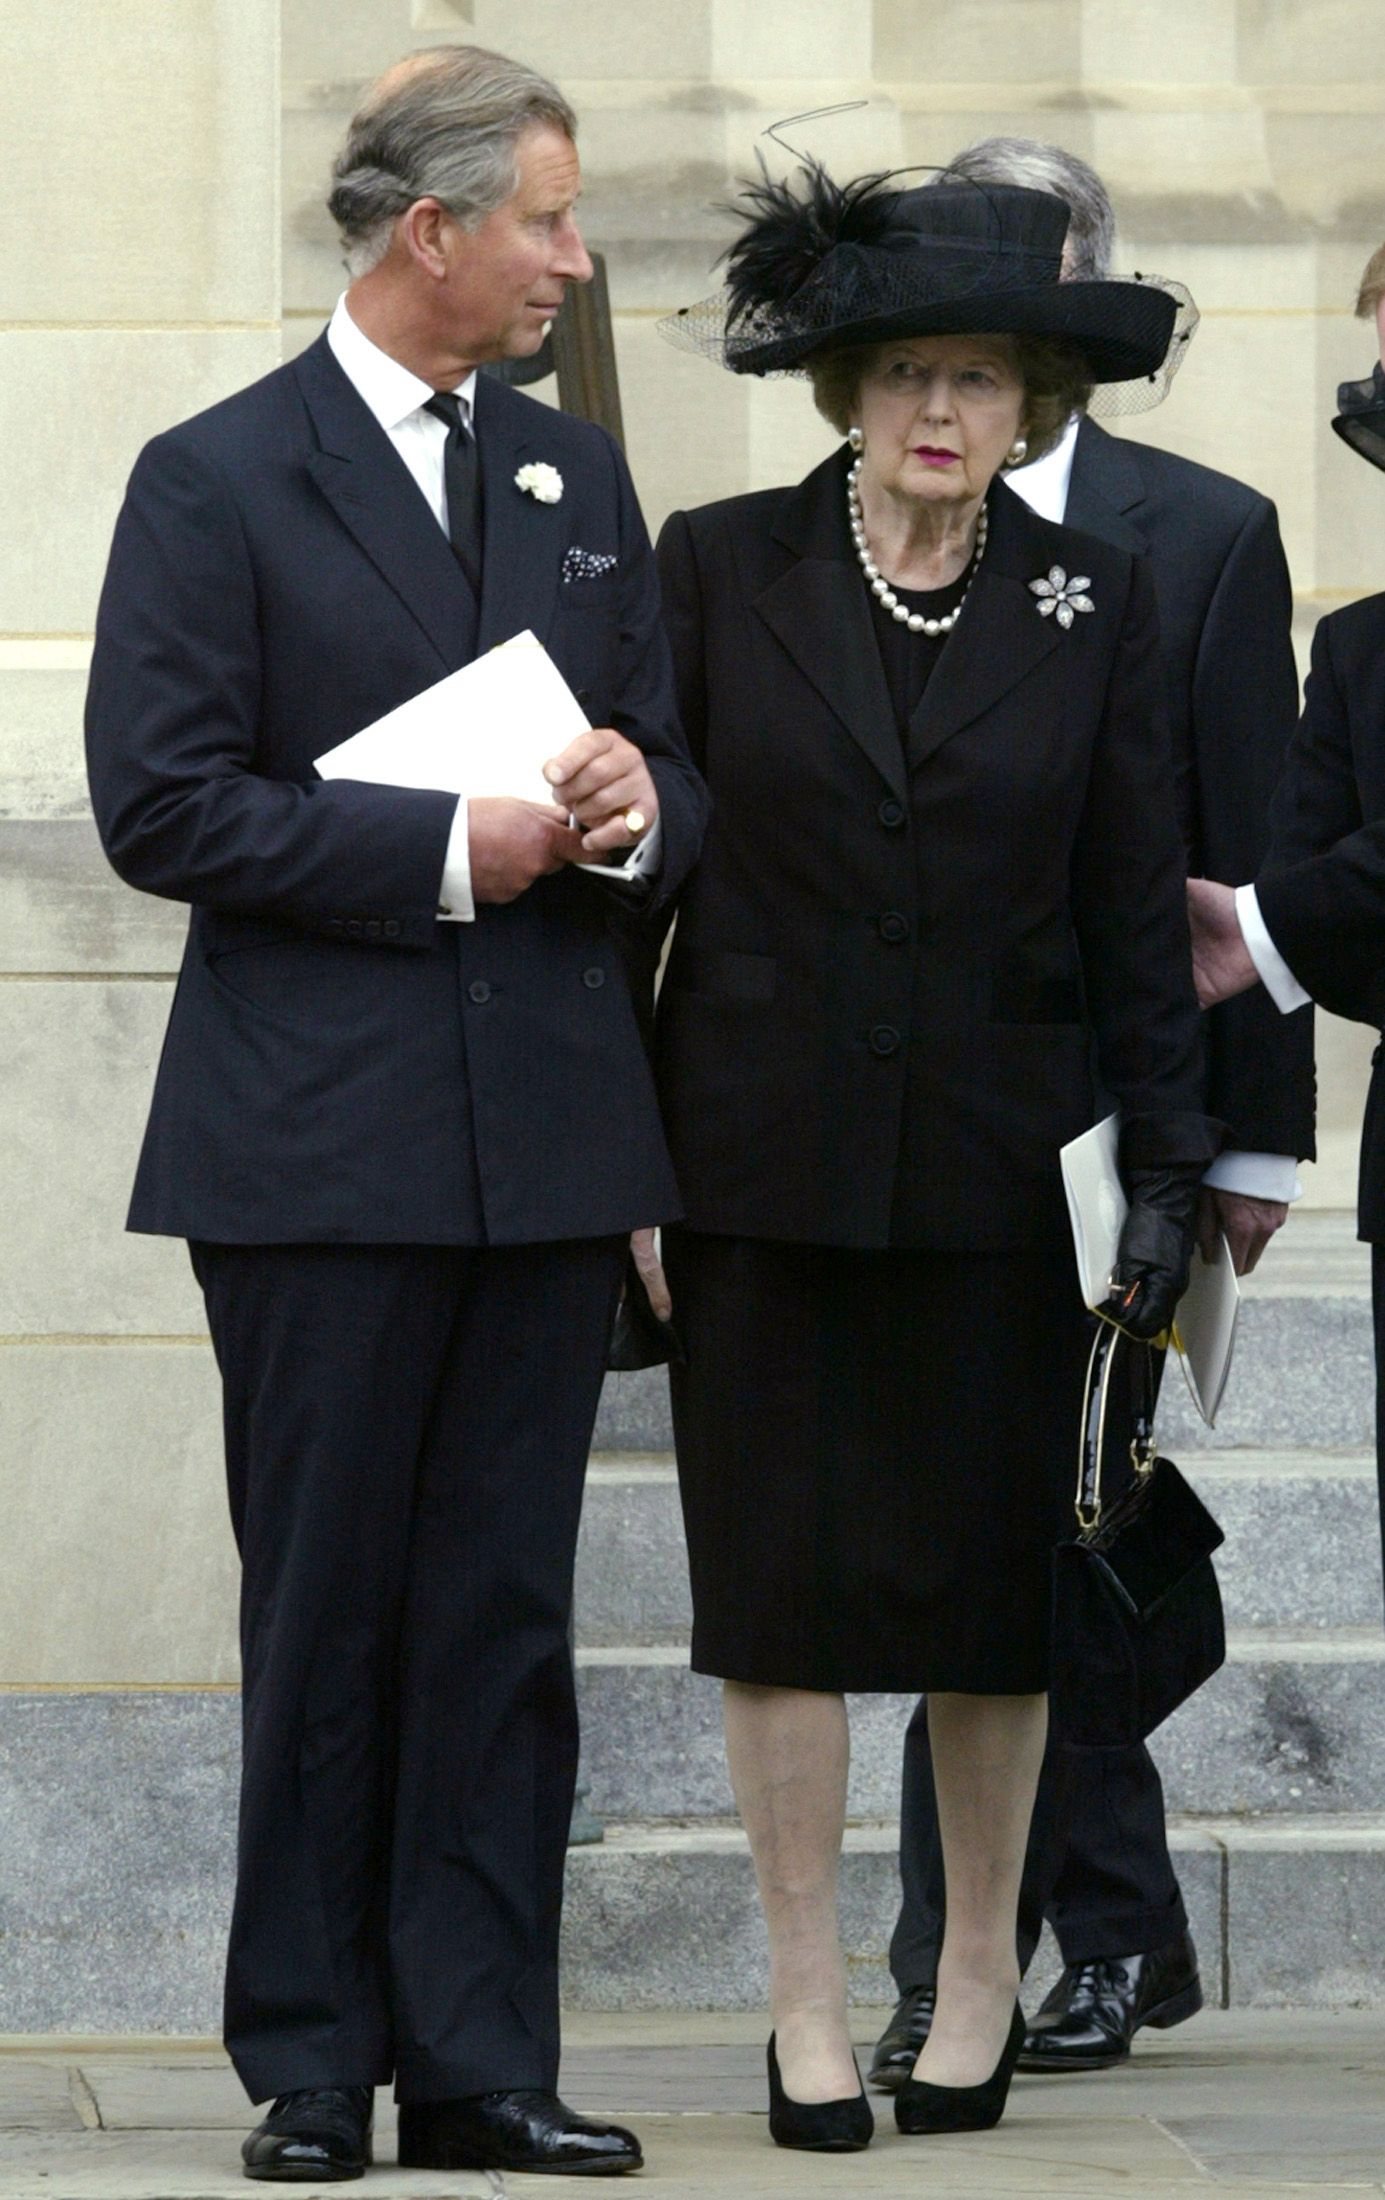 أمير ويلز تشارلز يغادر بصحبة رئيسة وزراء بريطانيا السابقة مارجريت تاتشر كاتدرائية واشنطن الوطنية بعد حضور جنازة الرئيس الأميركي الأسبق رونالد ريجان - واشنطن - 11 يونيو 2004 - REUTERS